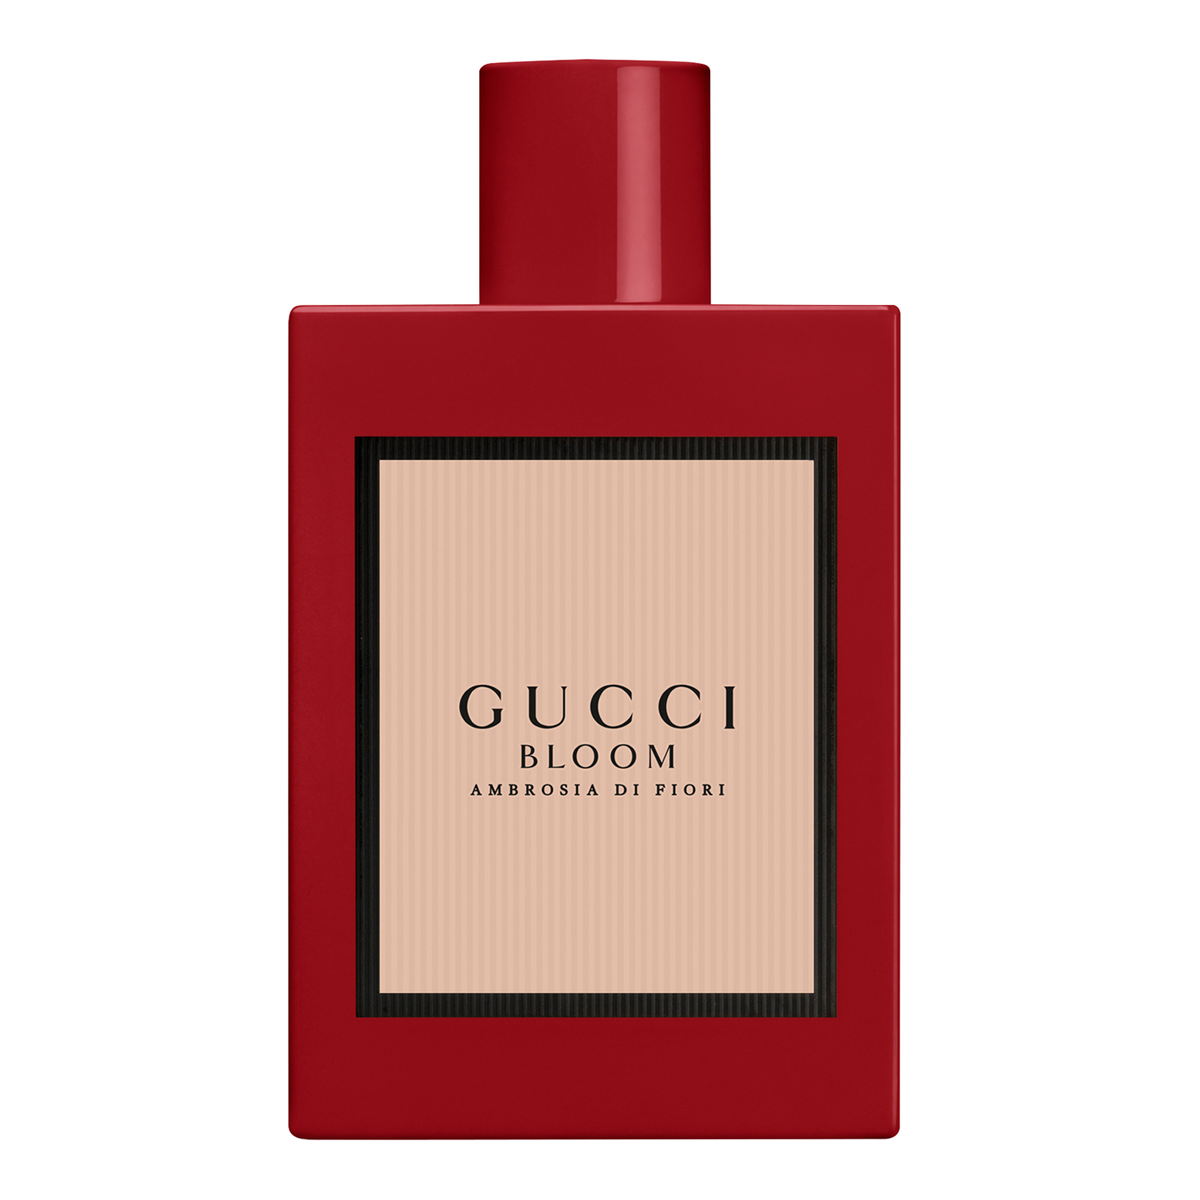 Gucci Bloom Ambrosia di Fiori Eau de Parfum Intense 100ml